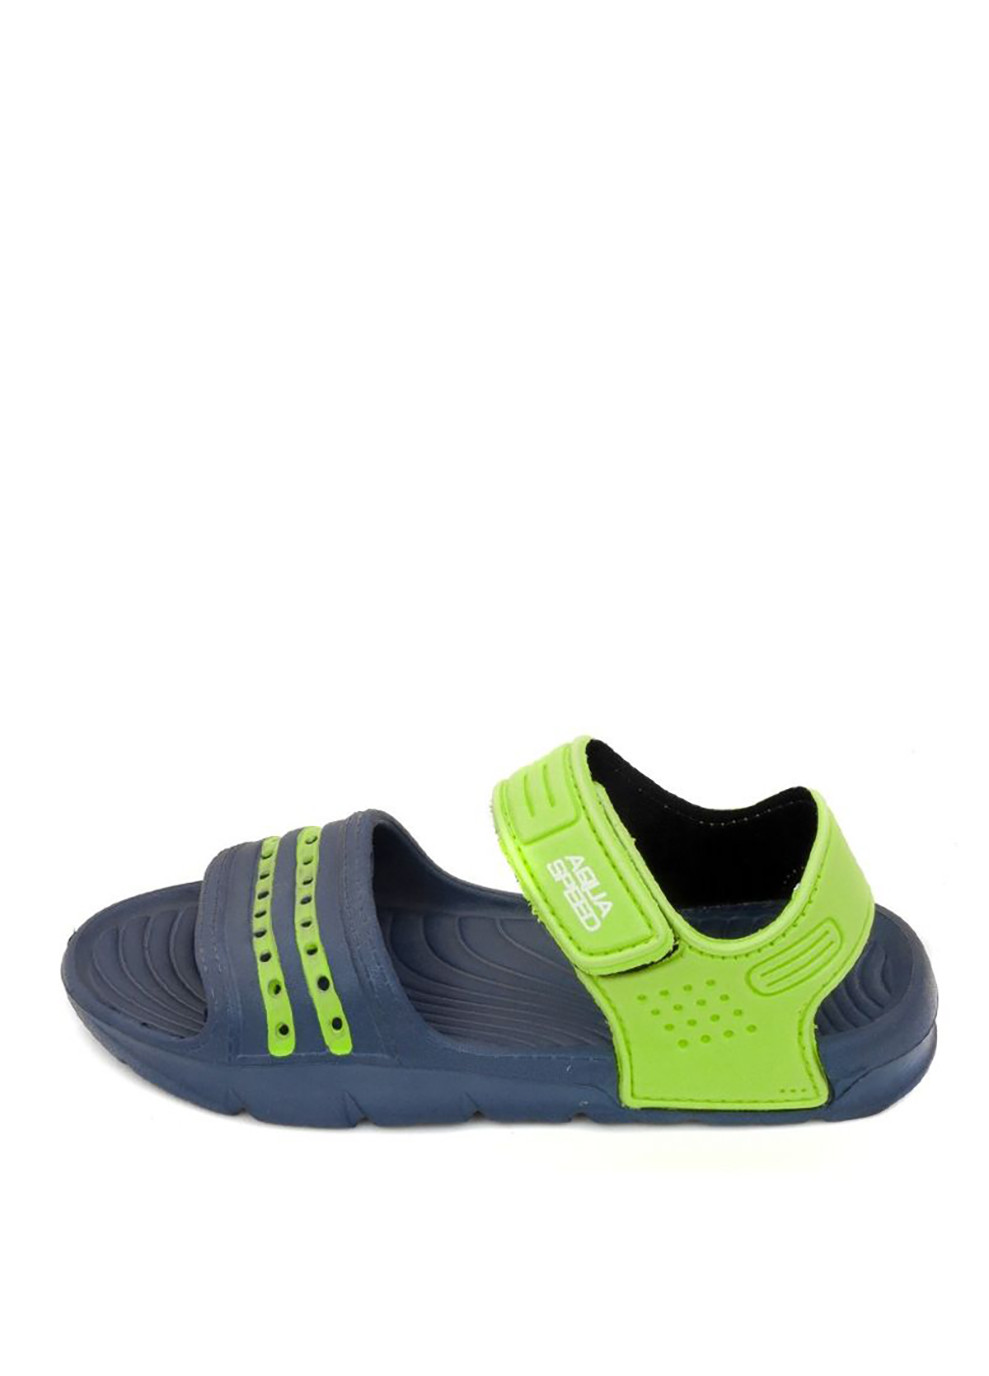 Синие спортивные сандали noli 6951 темно-синий, зеленый Aqua Speed